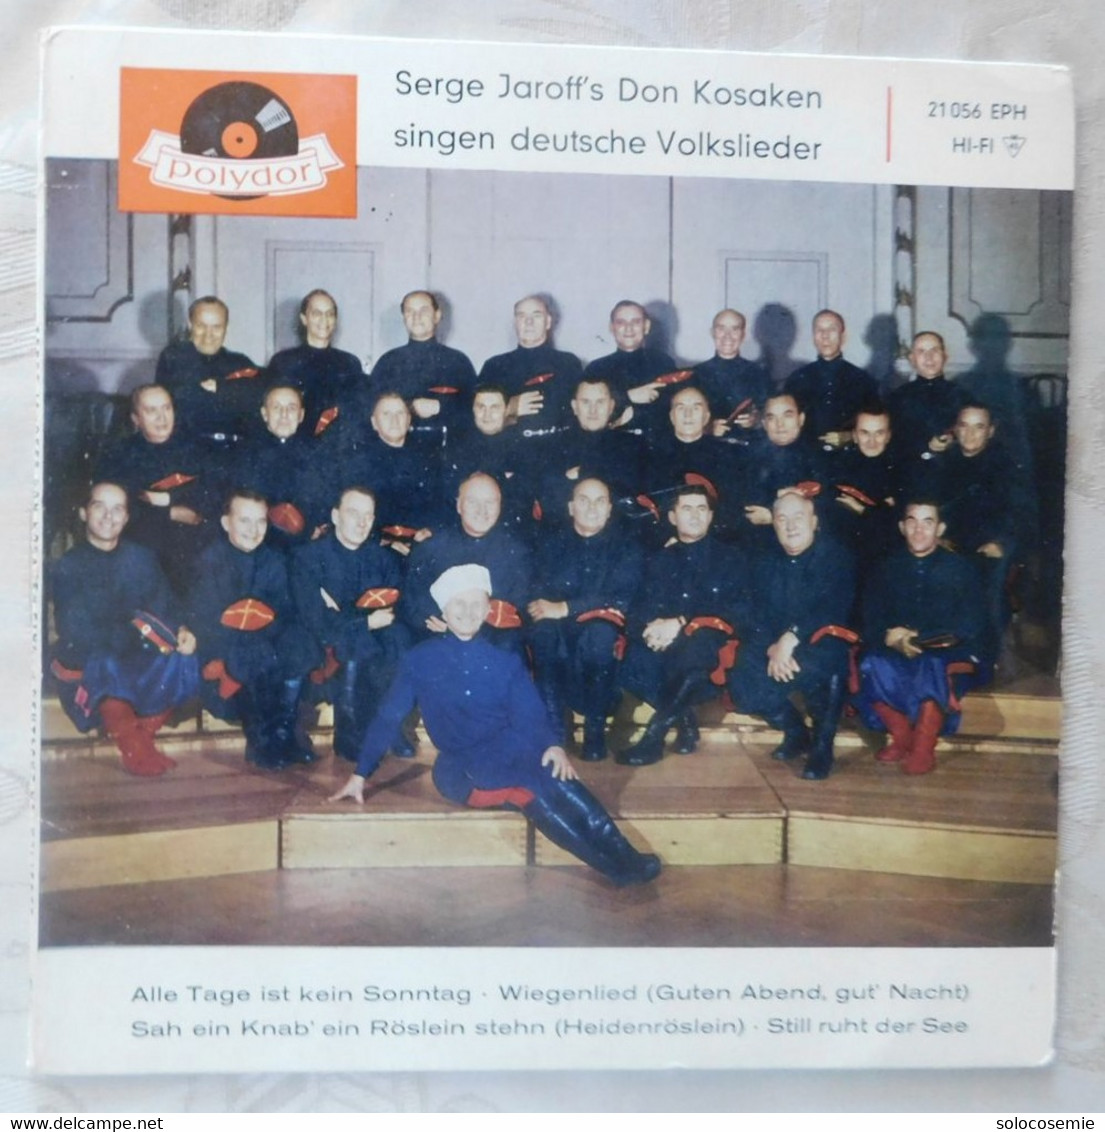 45 Giri Disco In Vinile: Serge Jaroff's Don Kosaken Singen Deutsche Volksilieder  - Polydor  21056 EPH - Autres - Musique Allemande